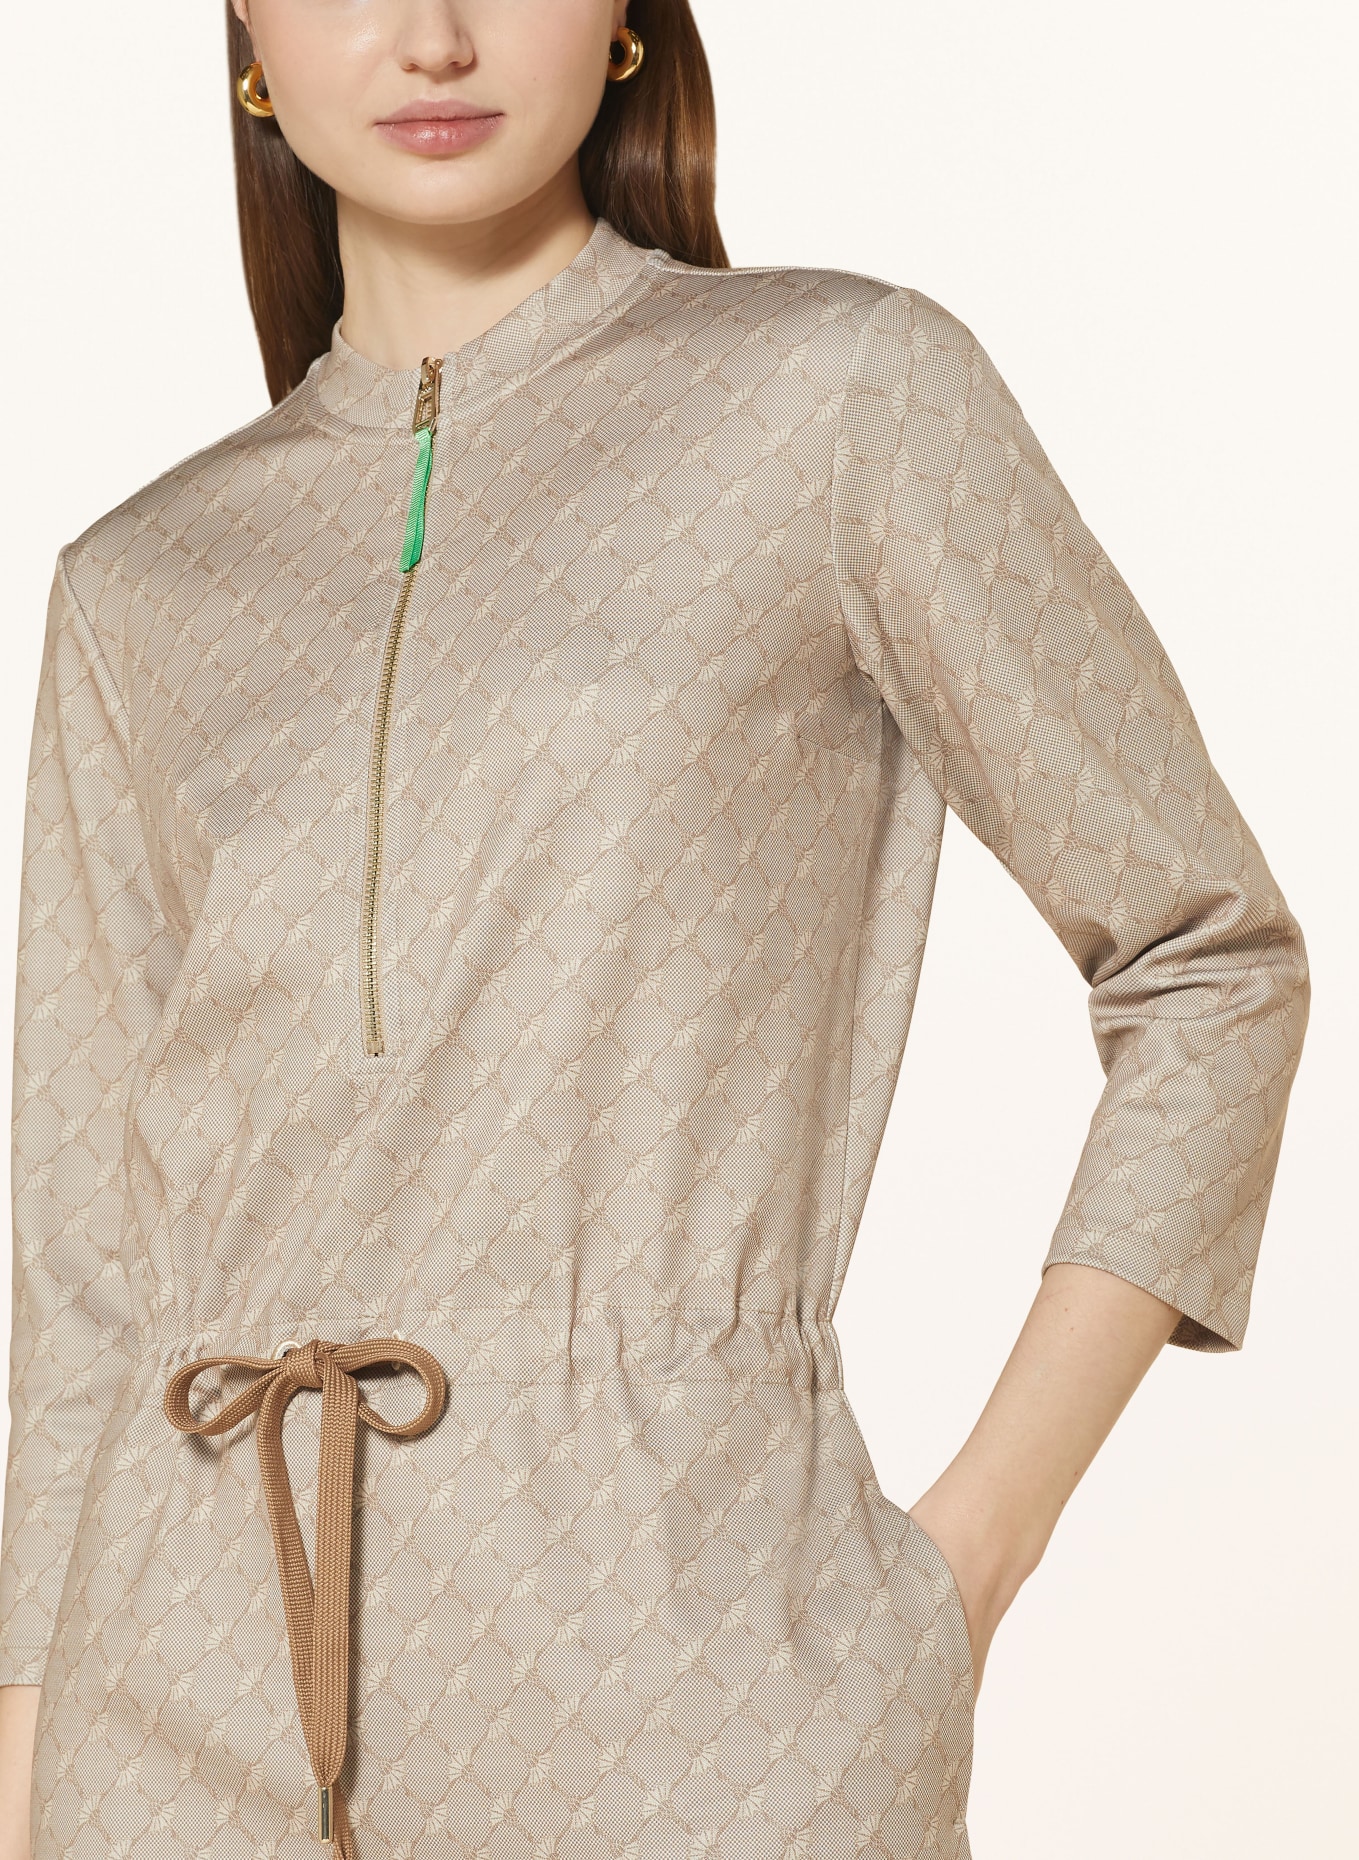 JOOP! Jersey dress with 3/4 sleeves, Color: BEIGE/ CREAM (Image 4)